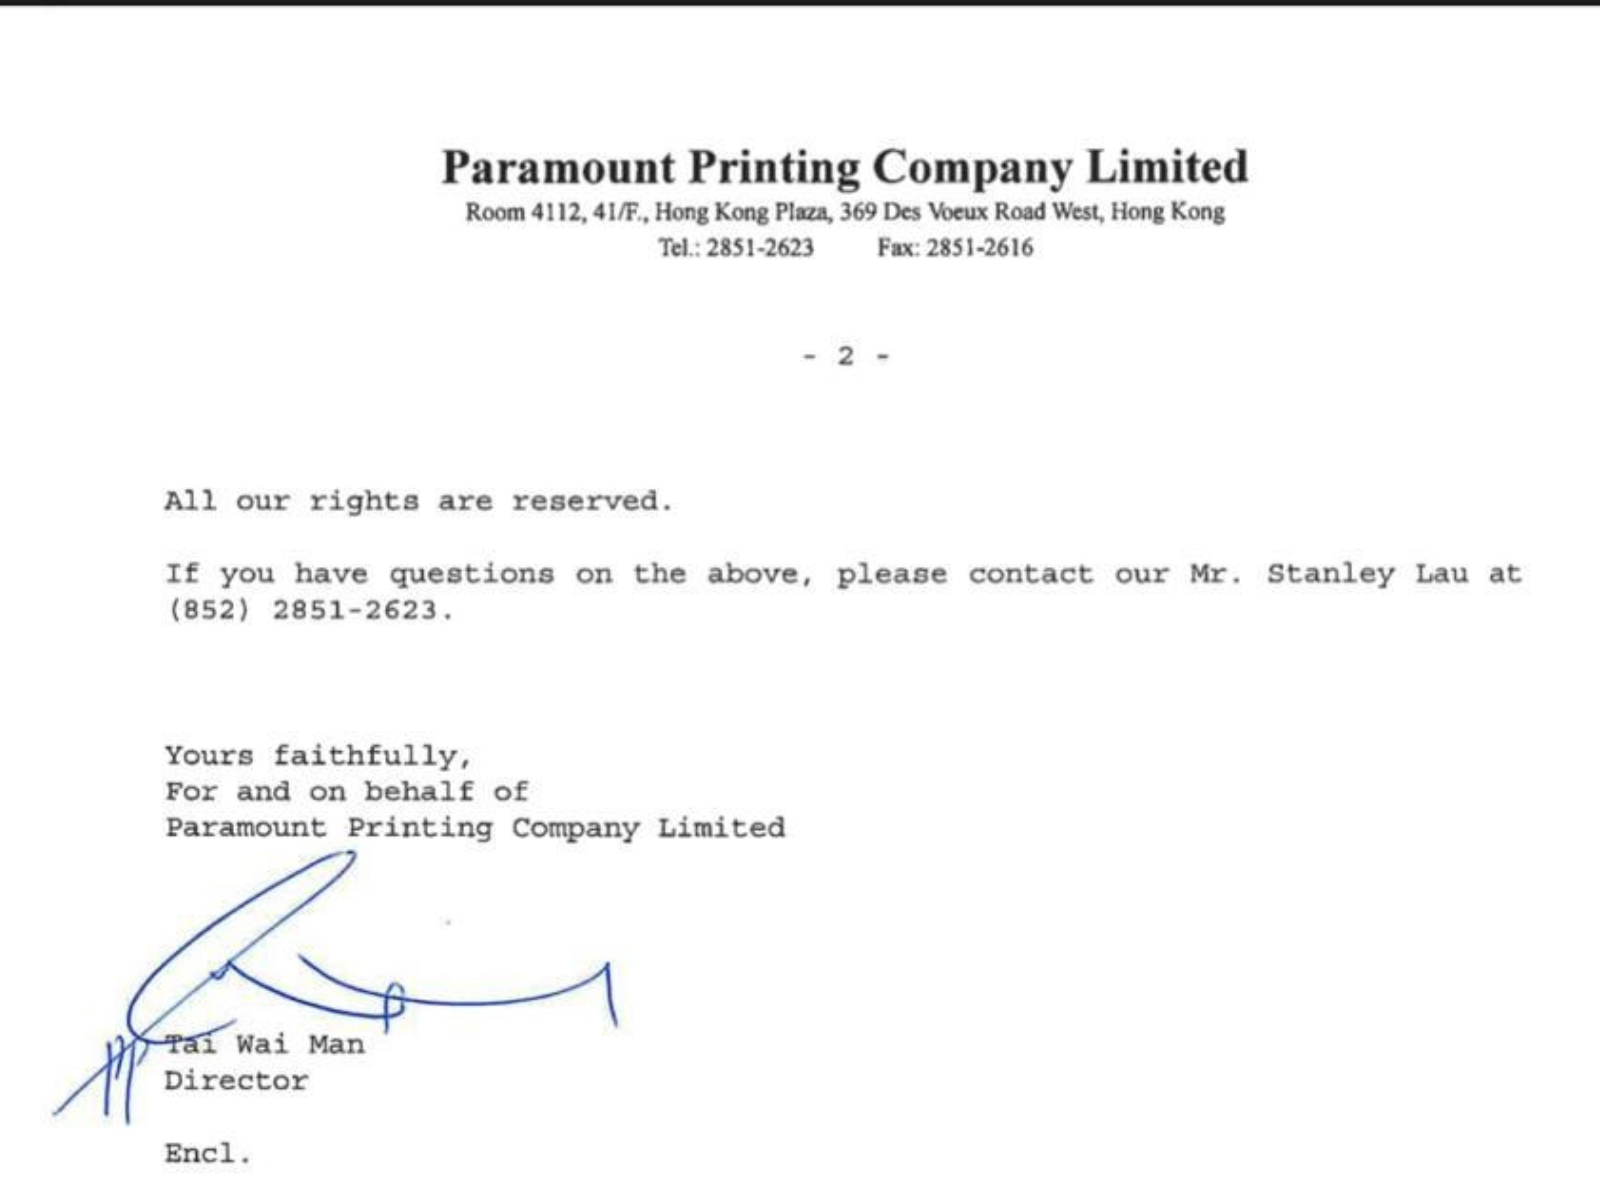 港府清盤人唯一指定董事戴偉文在今年5月20日發出的公司文件簽名，與在百樂門印刷公司文件上簽名明顯不同。吹哨者提供